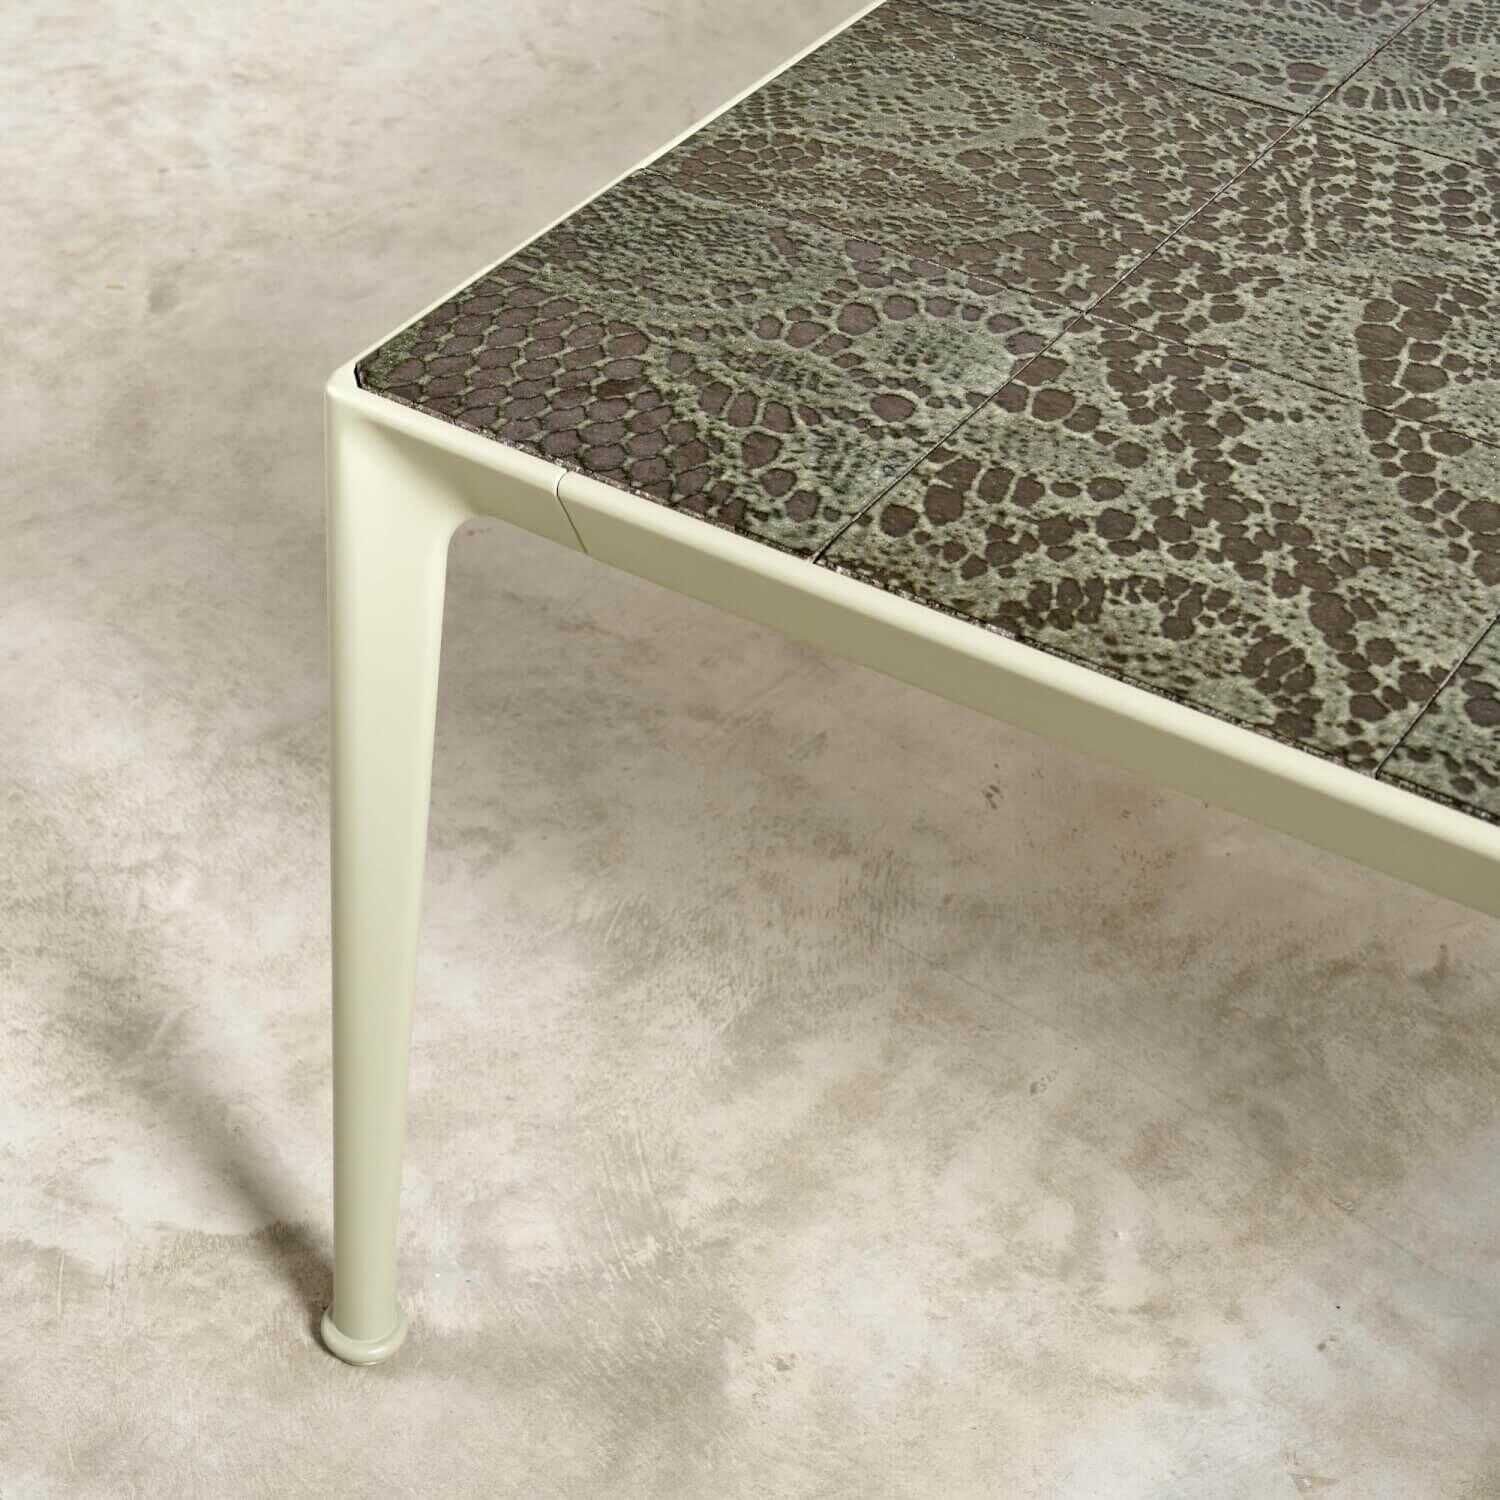 Couchtisch Outdoor Mirto Tischplatte Lavastein Farbe Salbei Gestell Aluminium Farbe Salbei